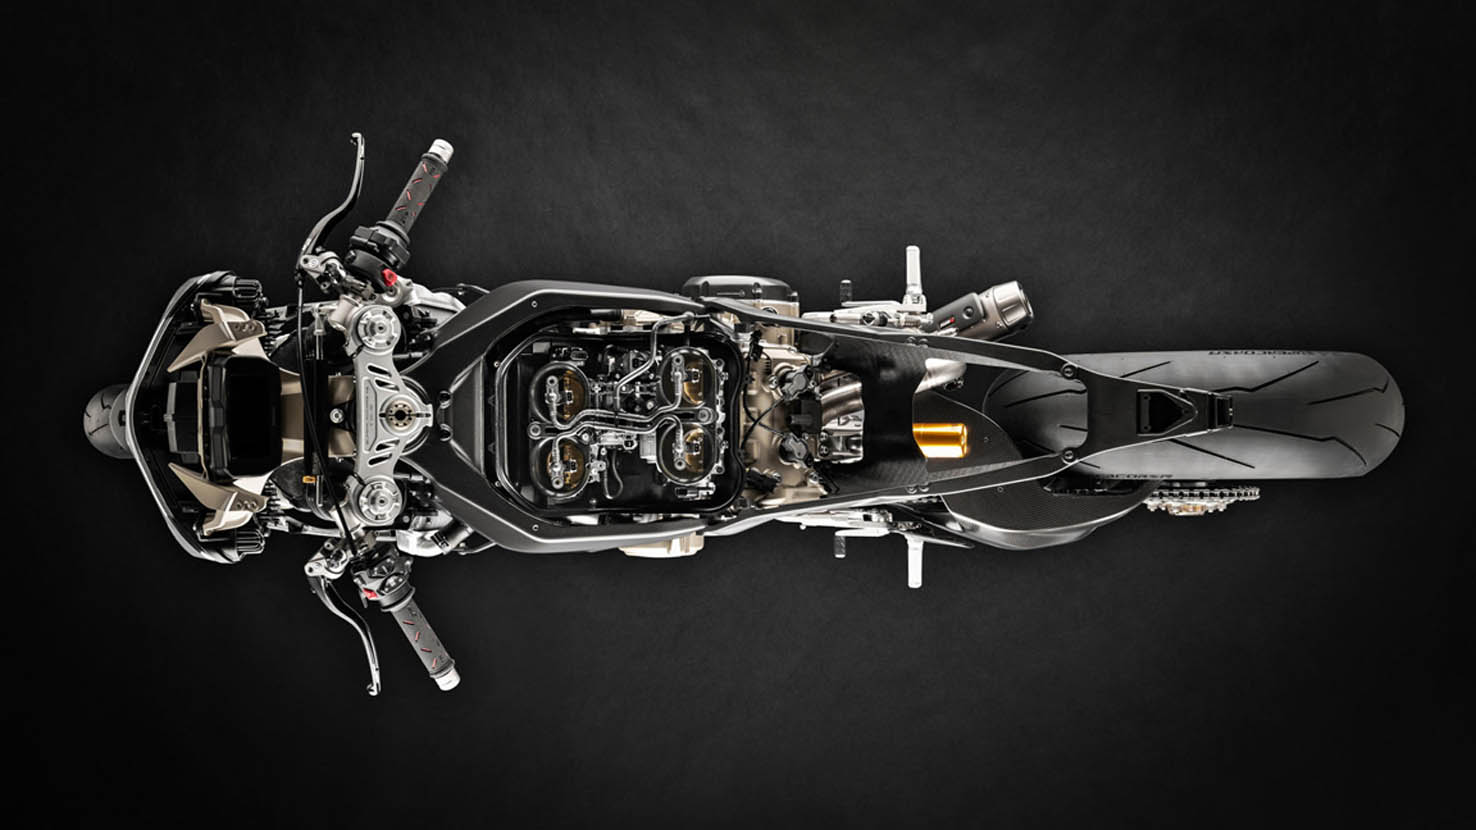 دراجة دوكاتي سوبر ليجيرا في4 الجديدة كلياً – صاروخ على عجلتين يصل الى صالات العرض في أكتوبر 2020 Ducati-Superleggera-V4-19